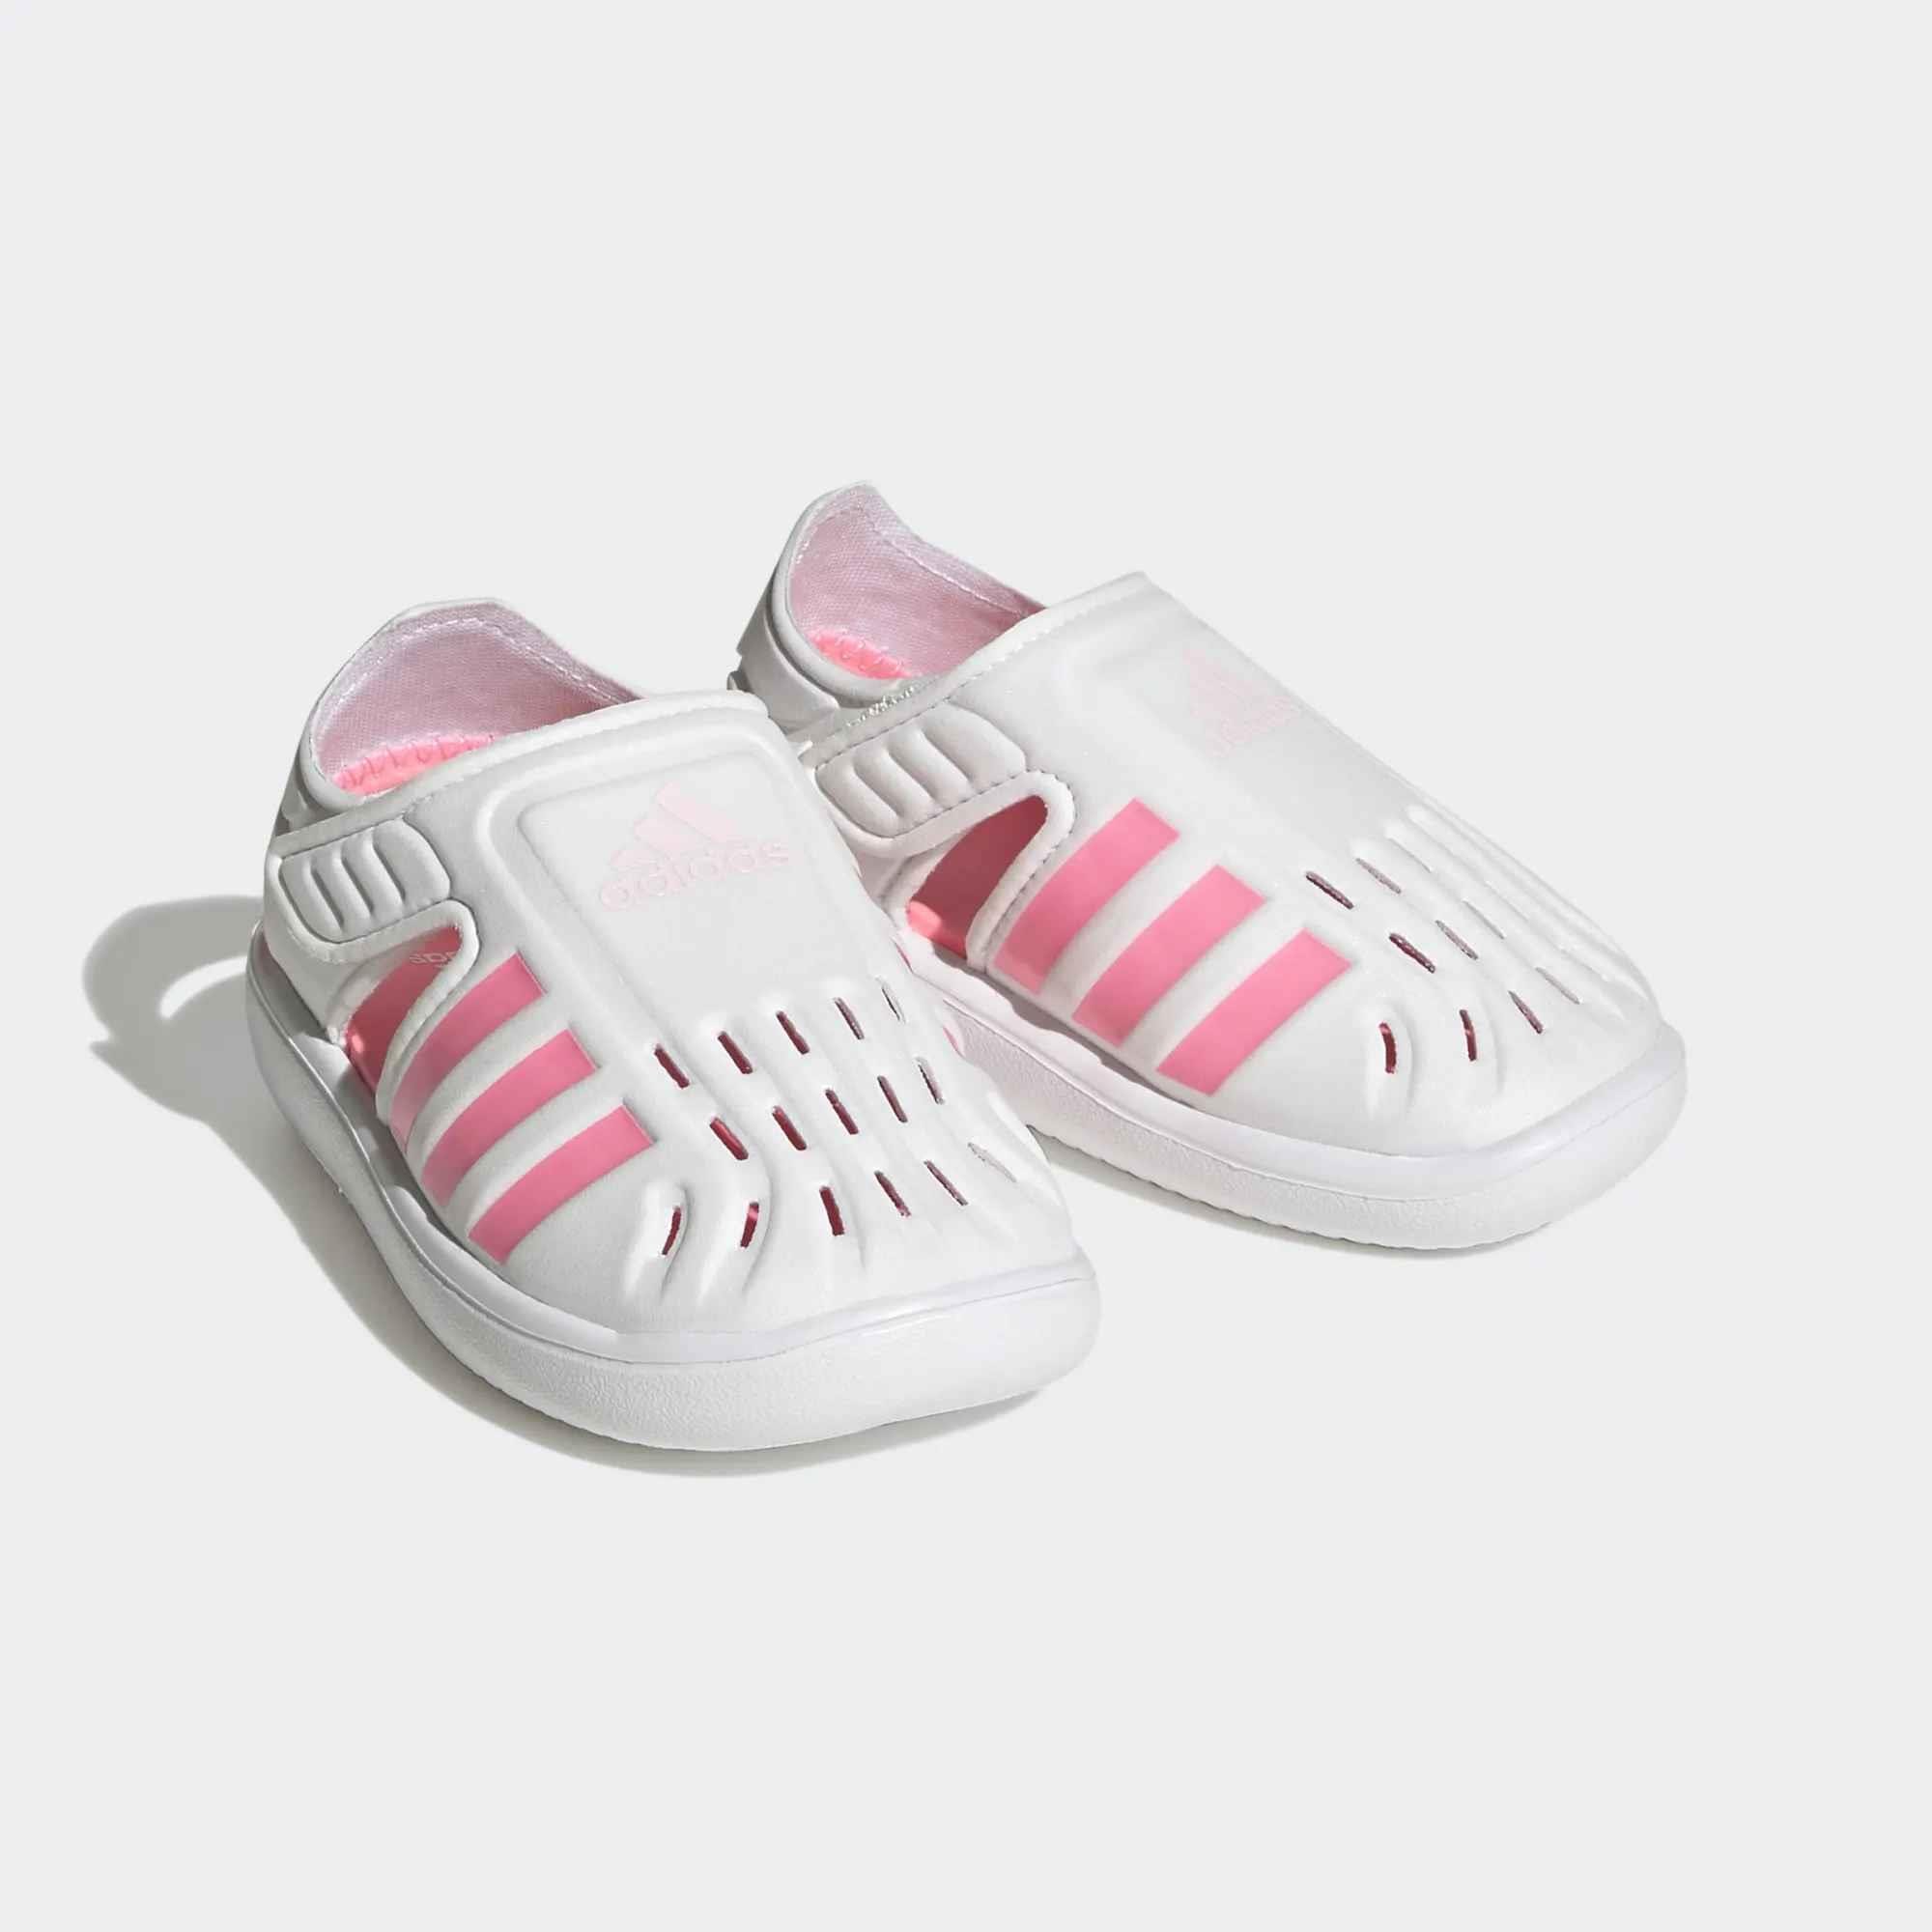 adidas Closed Toe Summer Water Çocuk Sandalet H06321